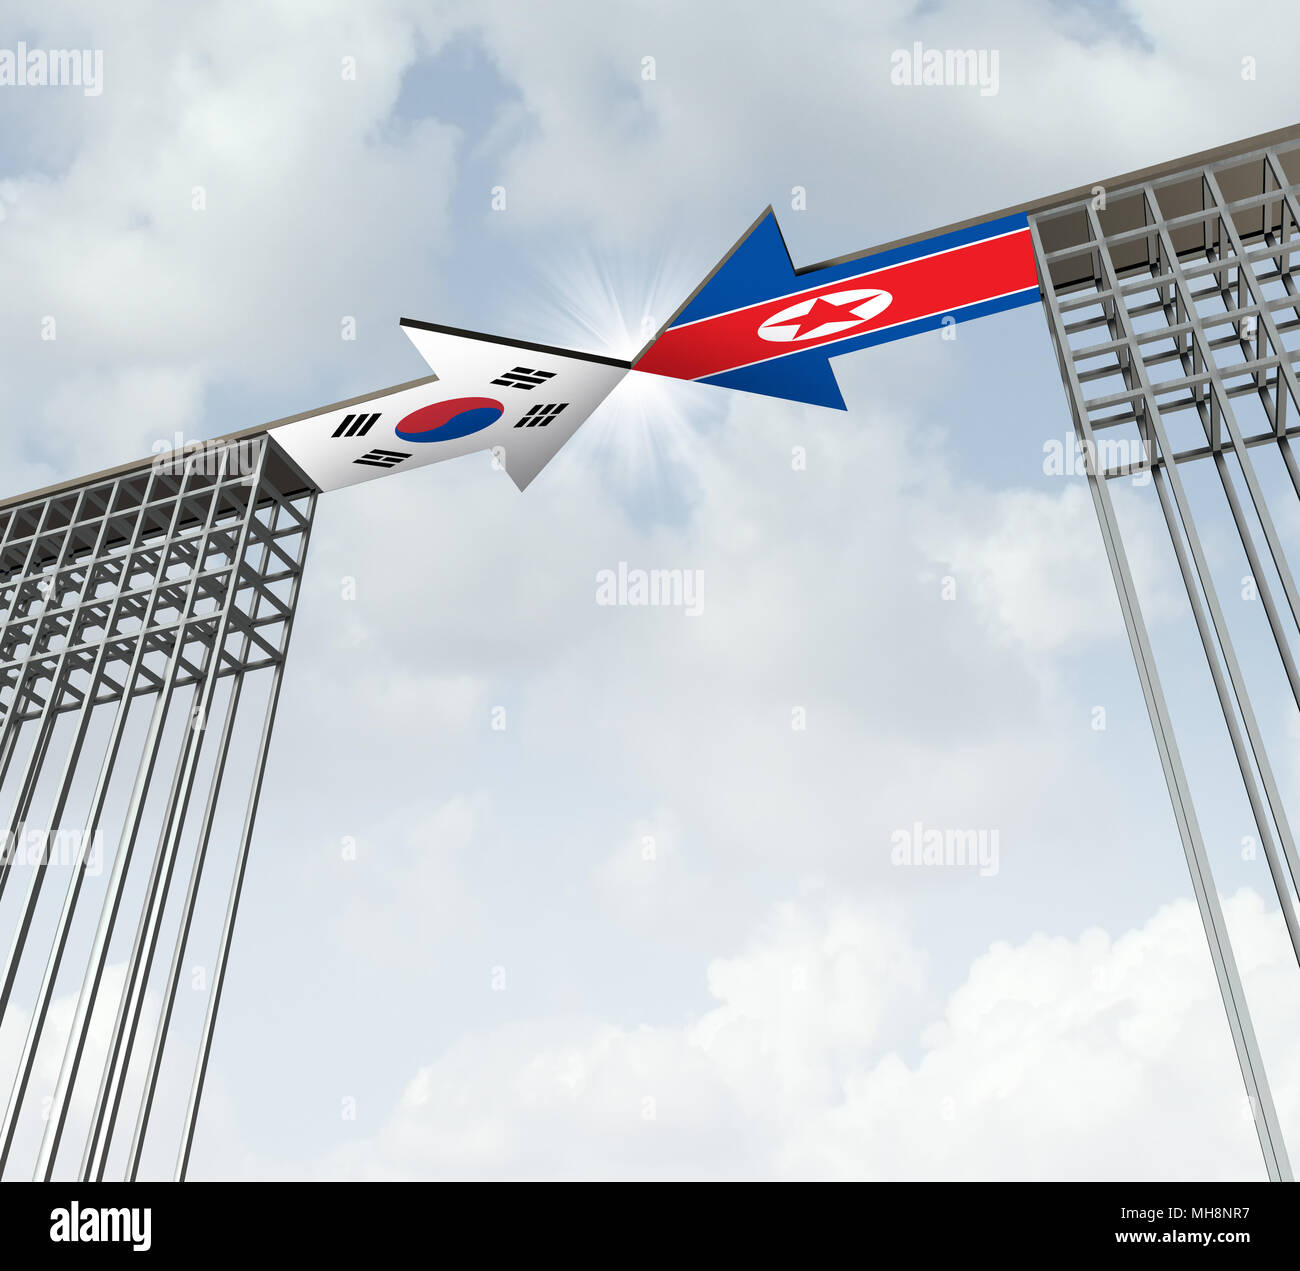 Süd- und Nordkorea Friedensabkommen diplomatischen Erfolg Konzept als Ostasien Diplomatie Symbol für die Denuklearisierung der koreanischen Halbinsel. Stockfoto